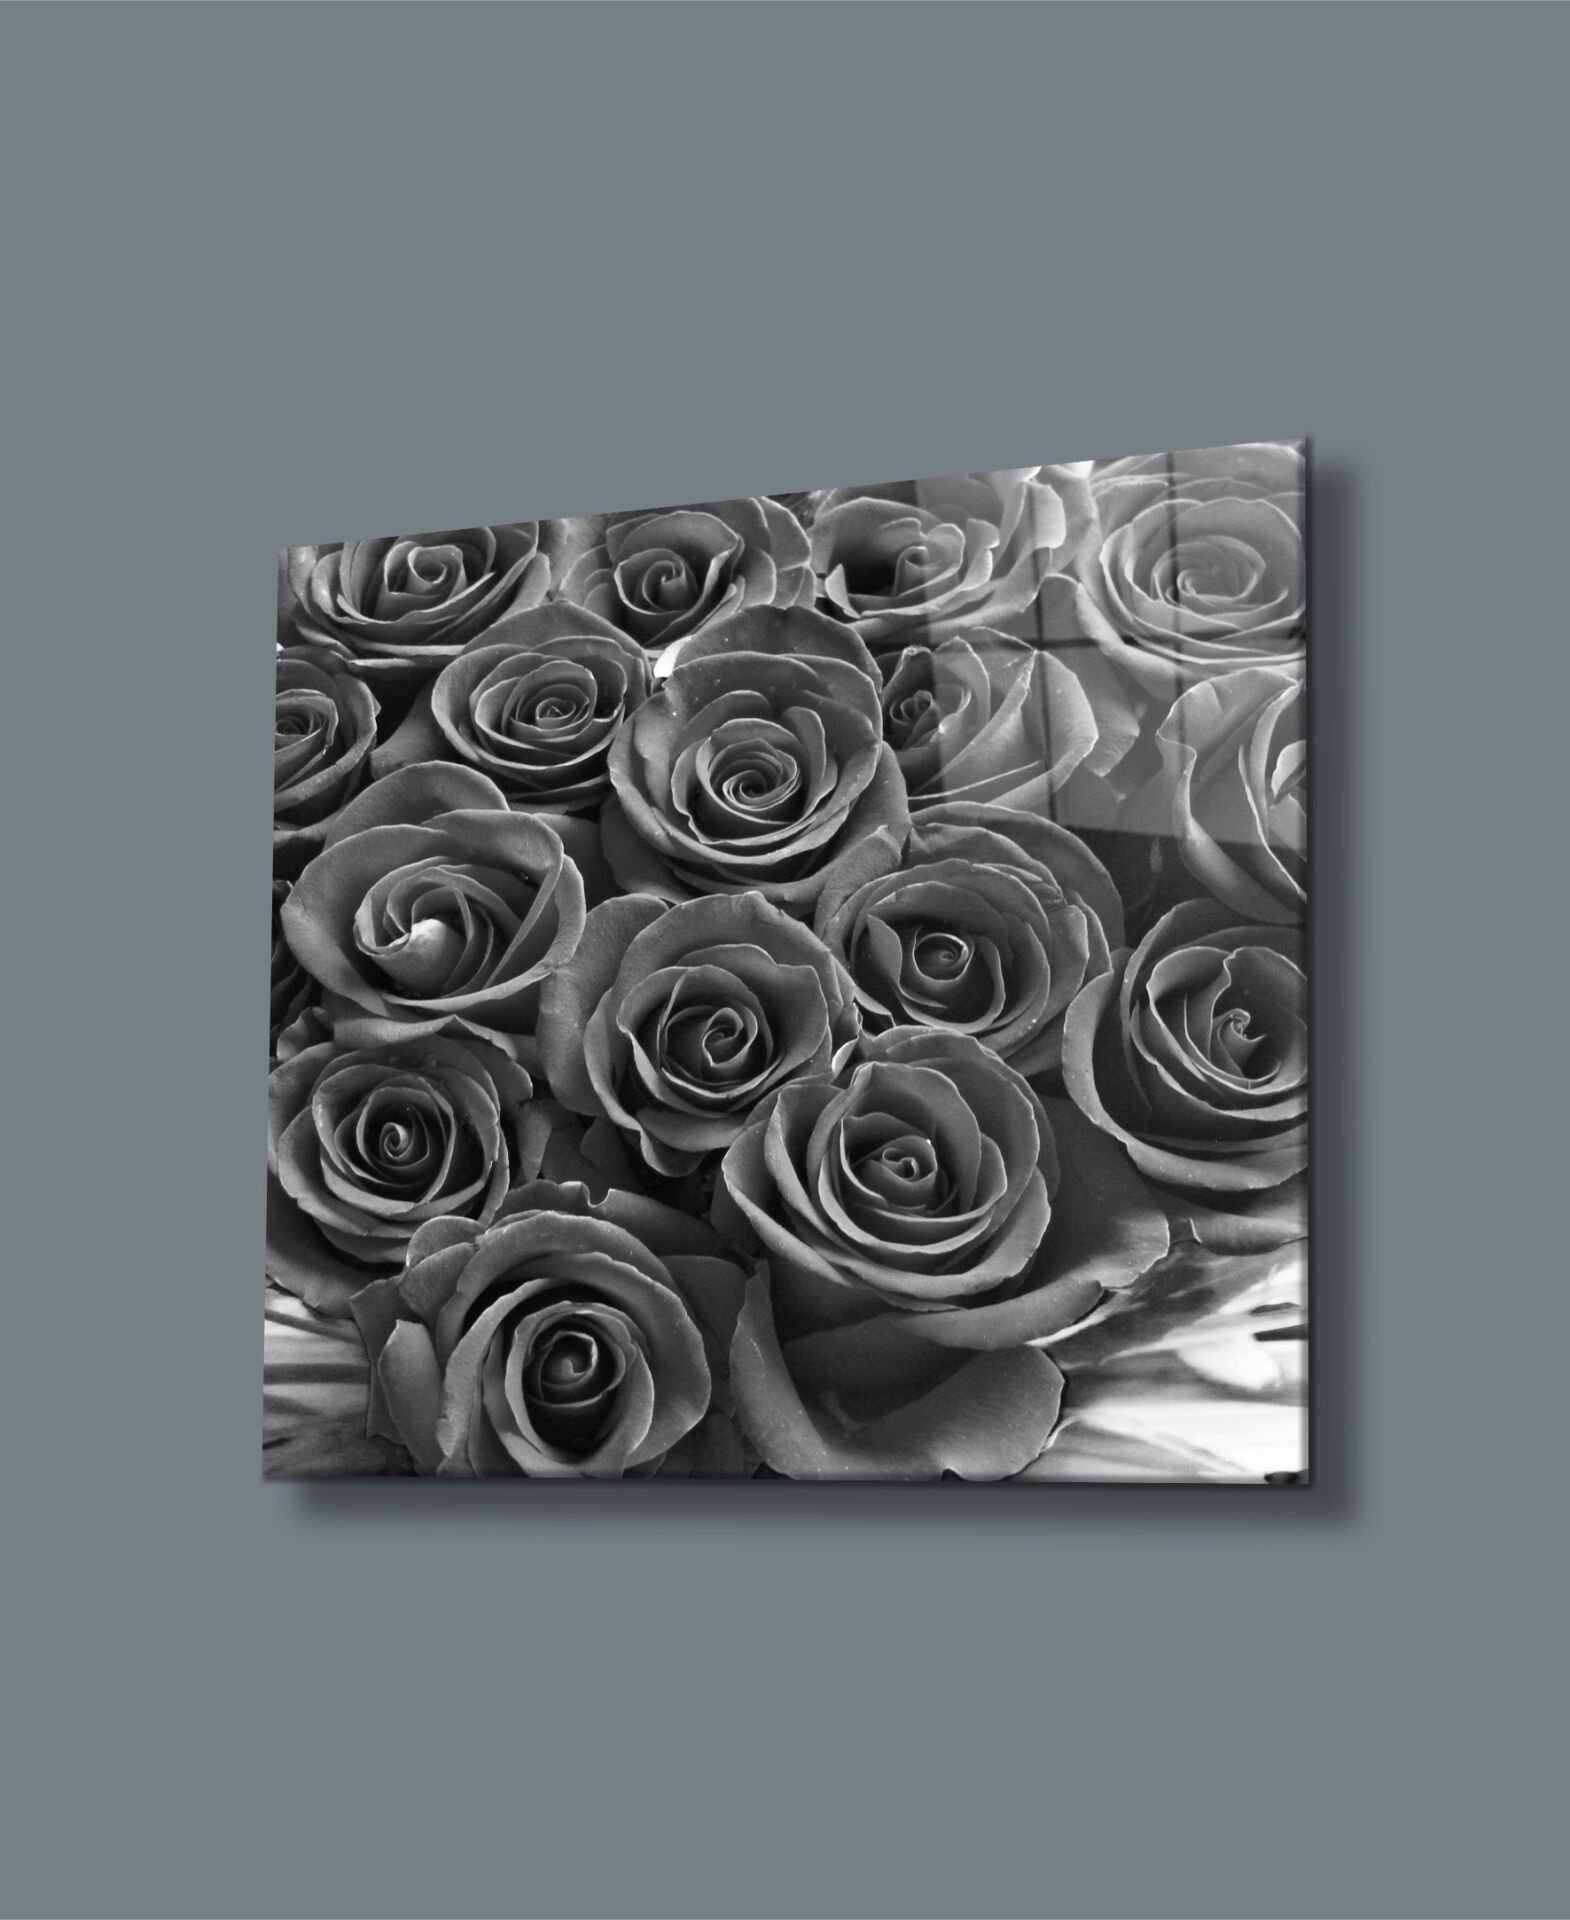 Siyah Beyaz Güller Uv Baskılı Cam Tablo 4mm Dayanıklı Temperli Cam 50x50 Cm